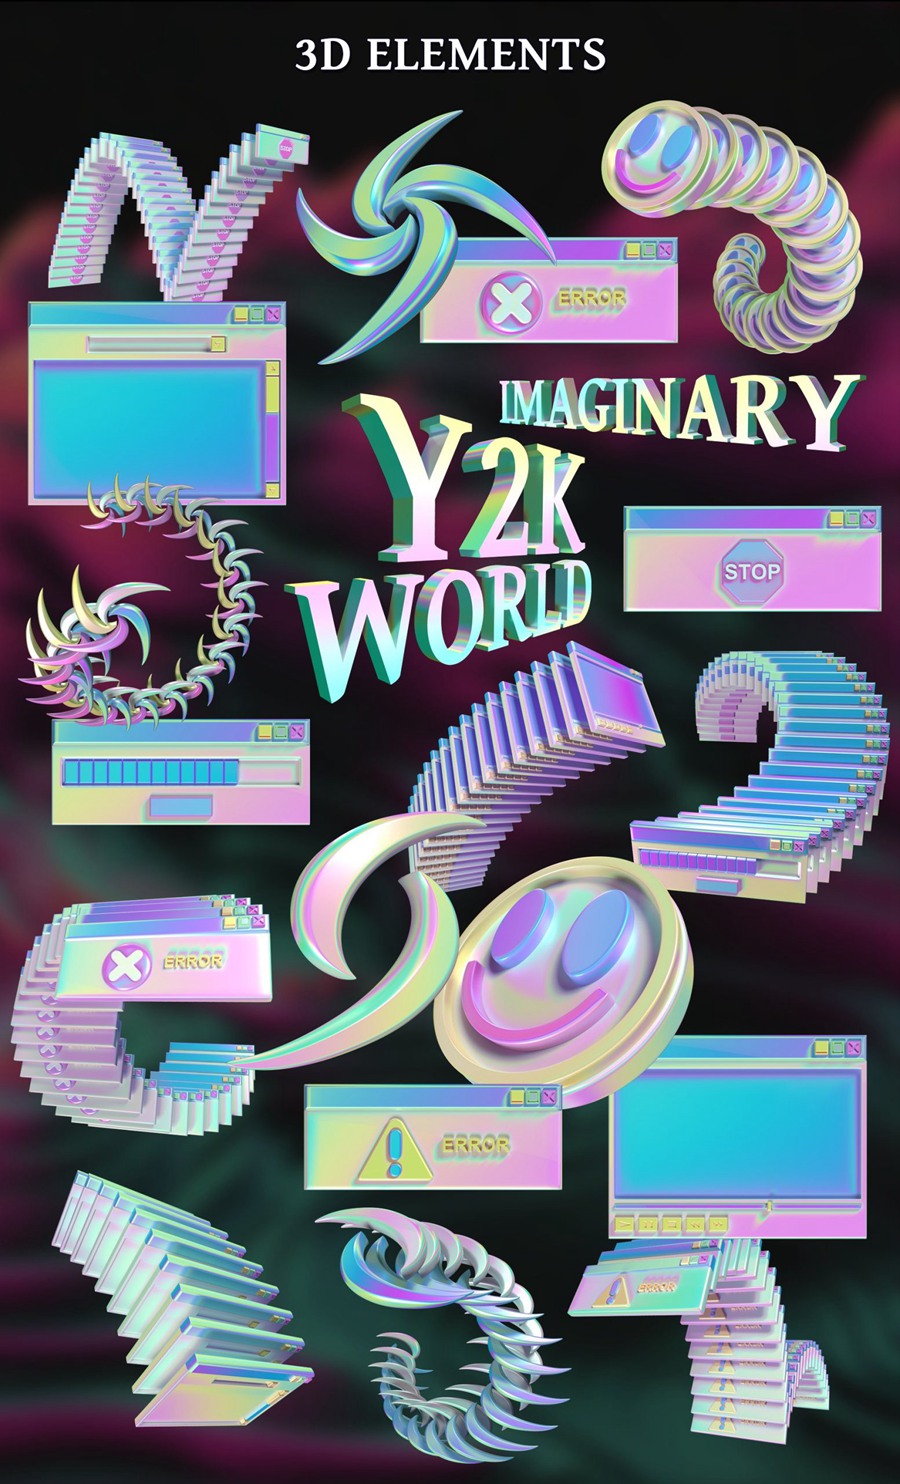 复古潮流全息Y2K风格人物雕像芭比娃娃汽车电脑手机音乐服装拼贴艺术传单海报广告3D套件 Imaginary Y2K world – Collage Kit 2 , 第8张